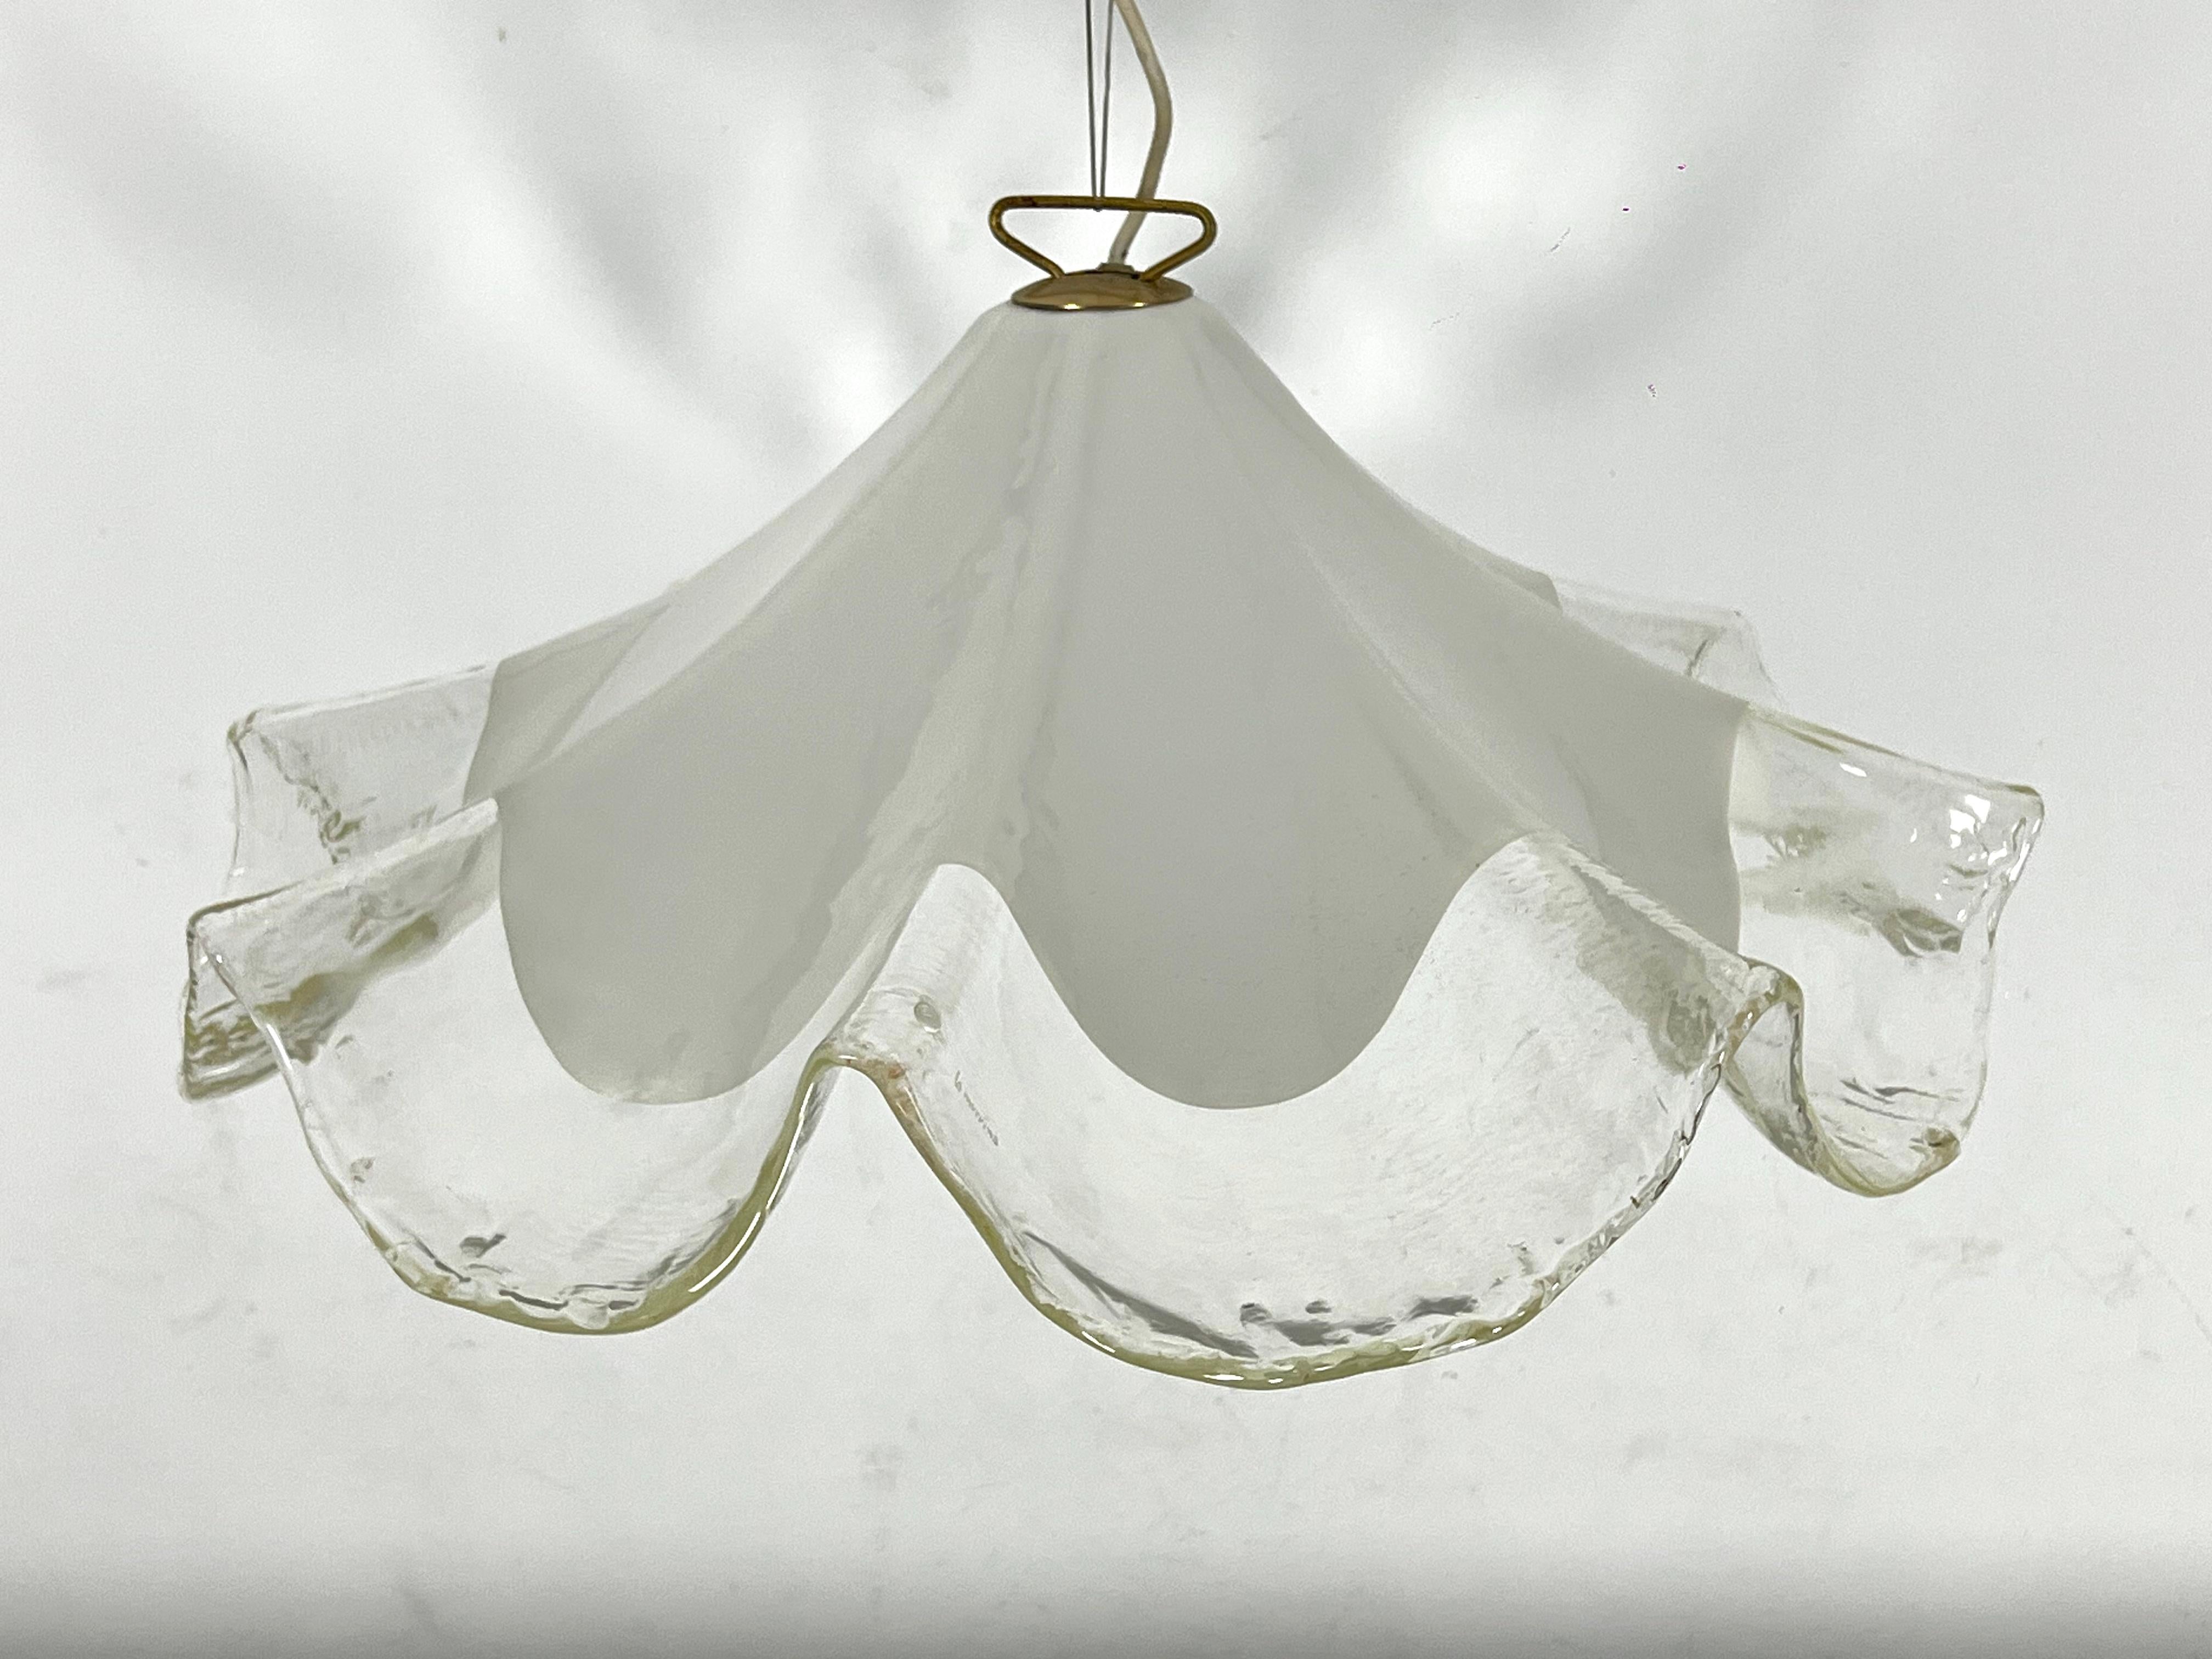 Große Hängeleuchte aus klarem und weißem Murano-Glas, hergestellt von La murrina in den 70er Jahren. Unterschrieben. Toller Vintage-Zustand mit normalen Alters- und Gebrauchsspuren. Keine Risse oder Chips. Voll funktionsfähig mit EU-Standard, bei